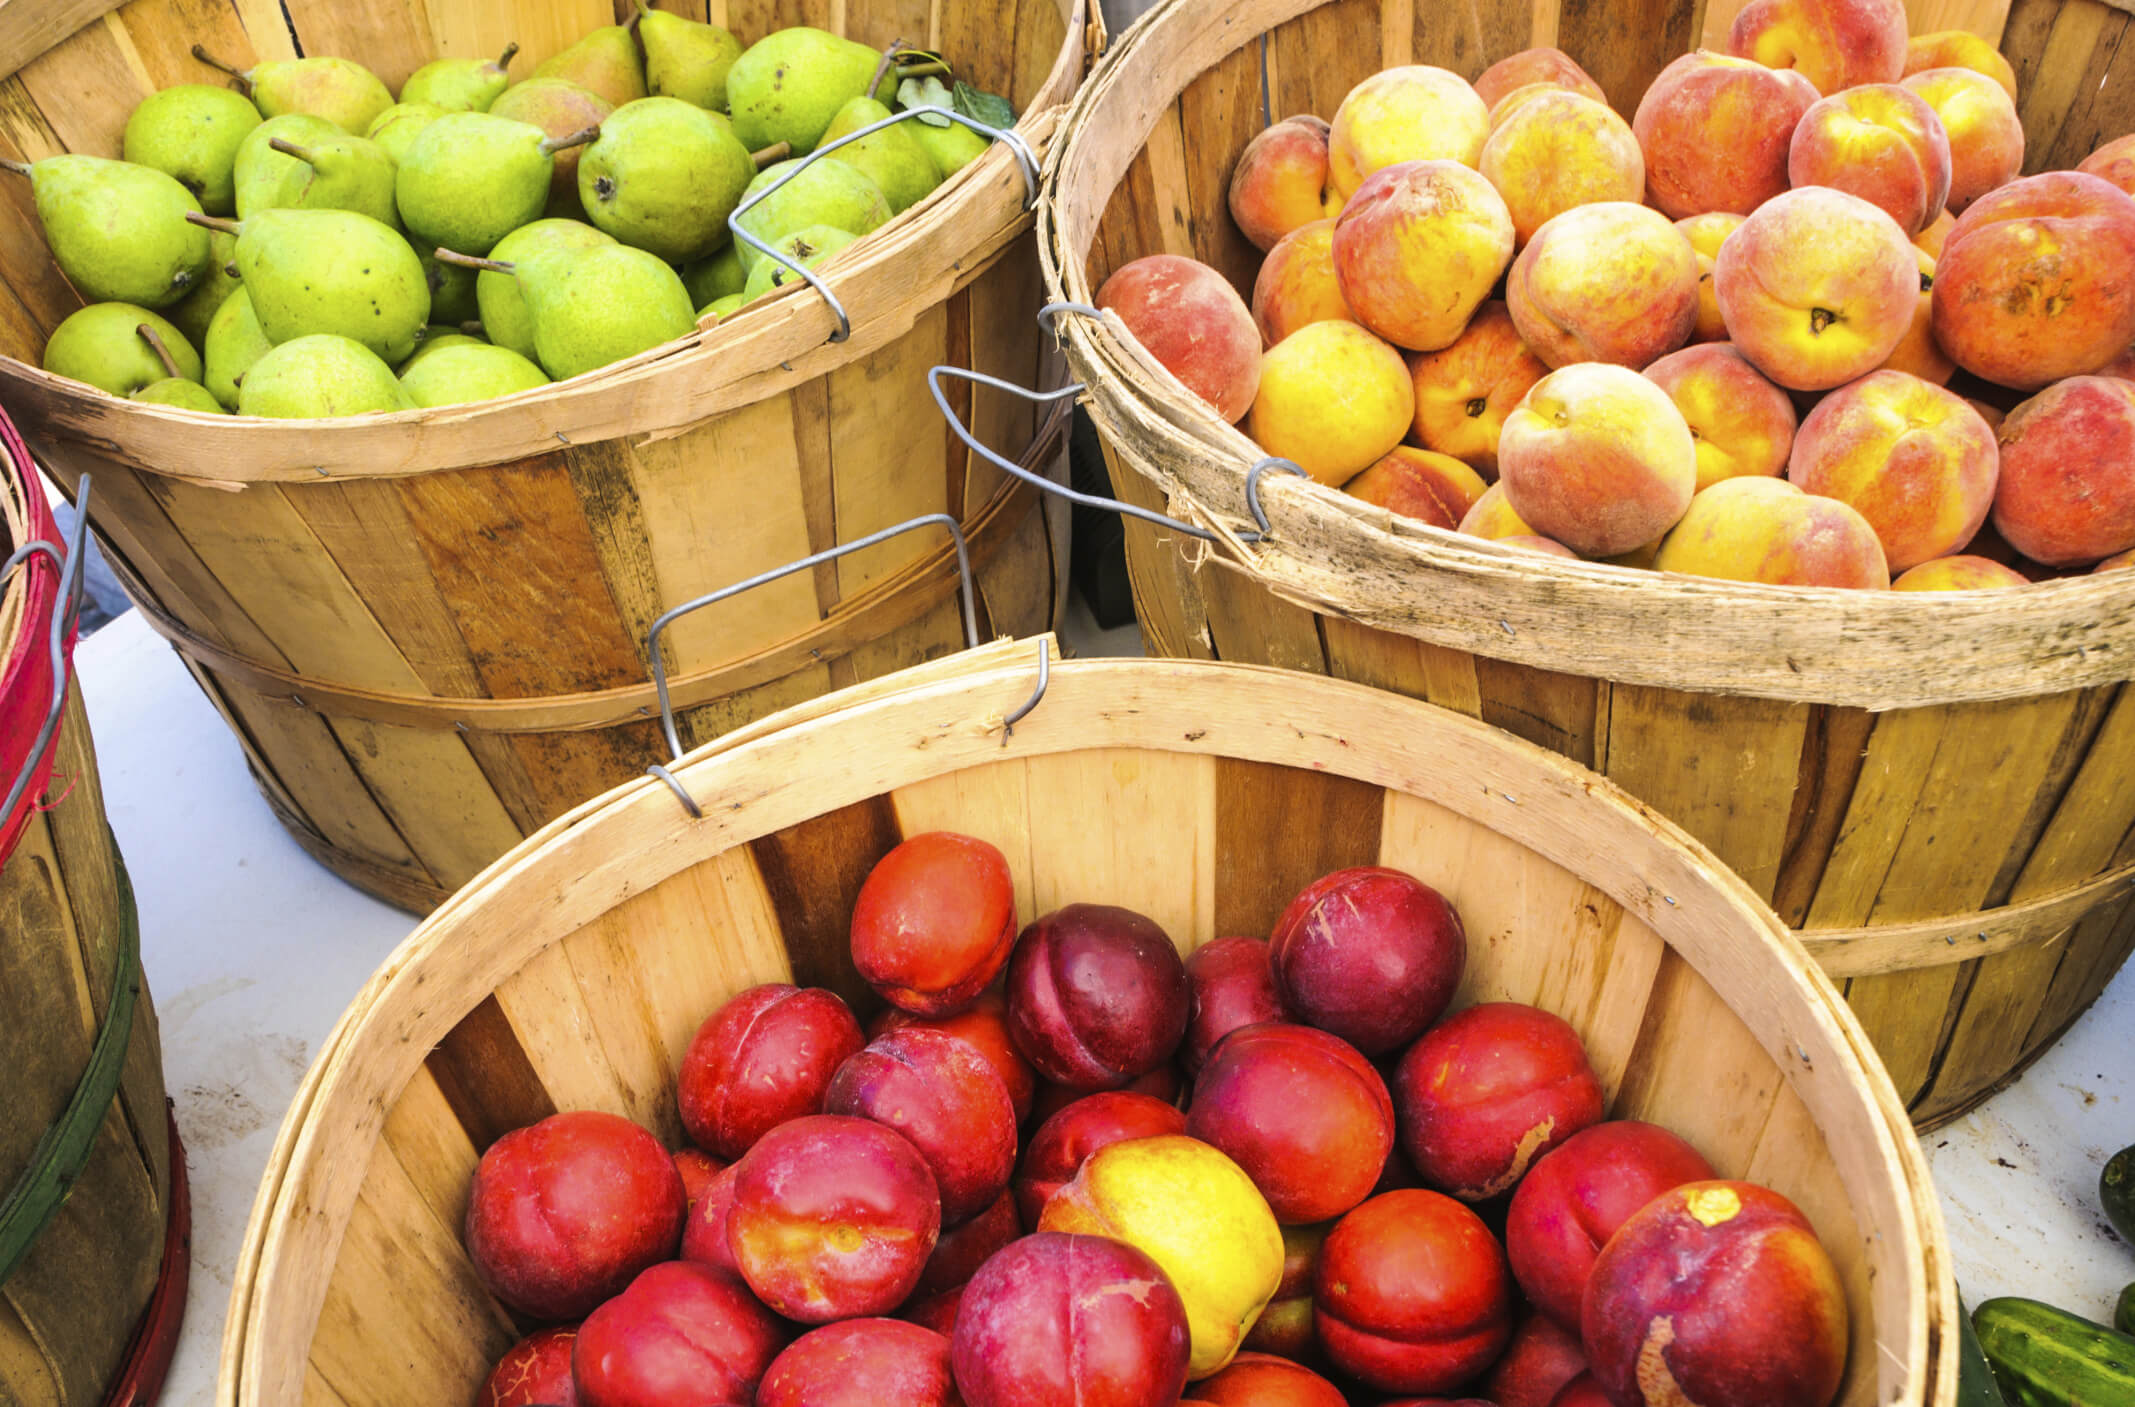 Baskets of fruit